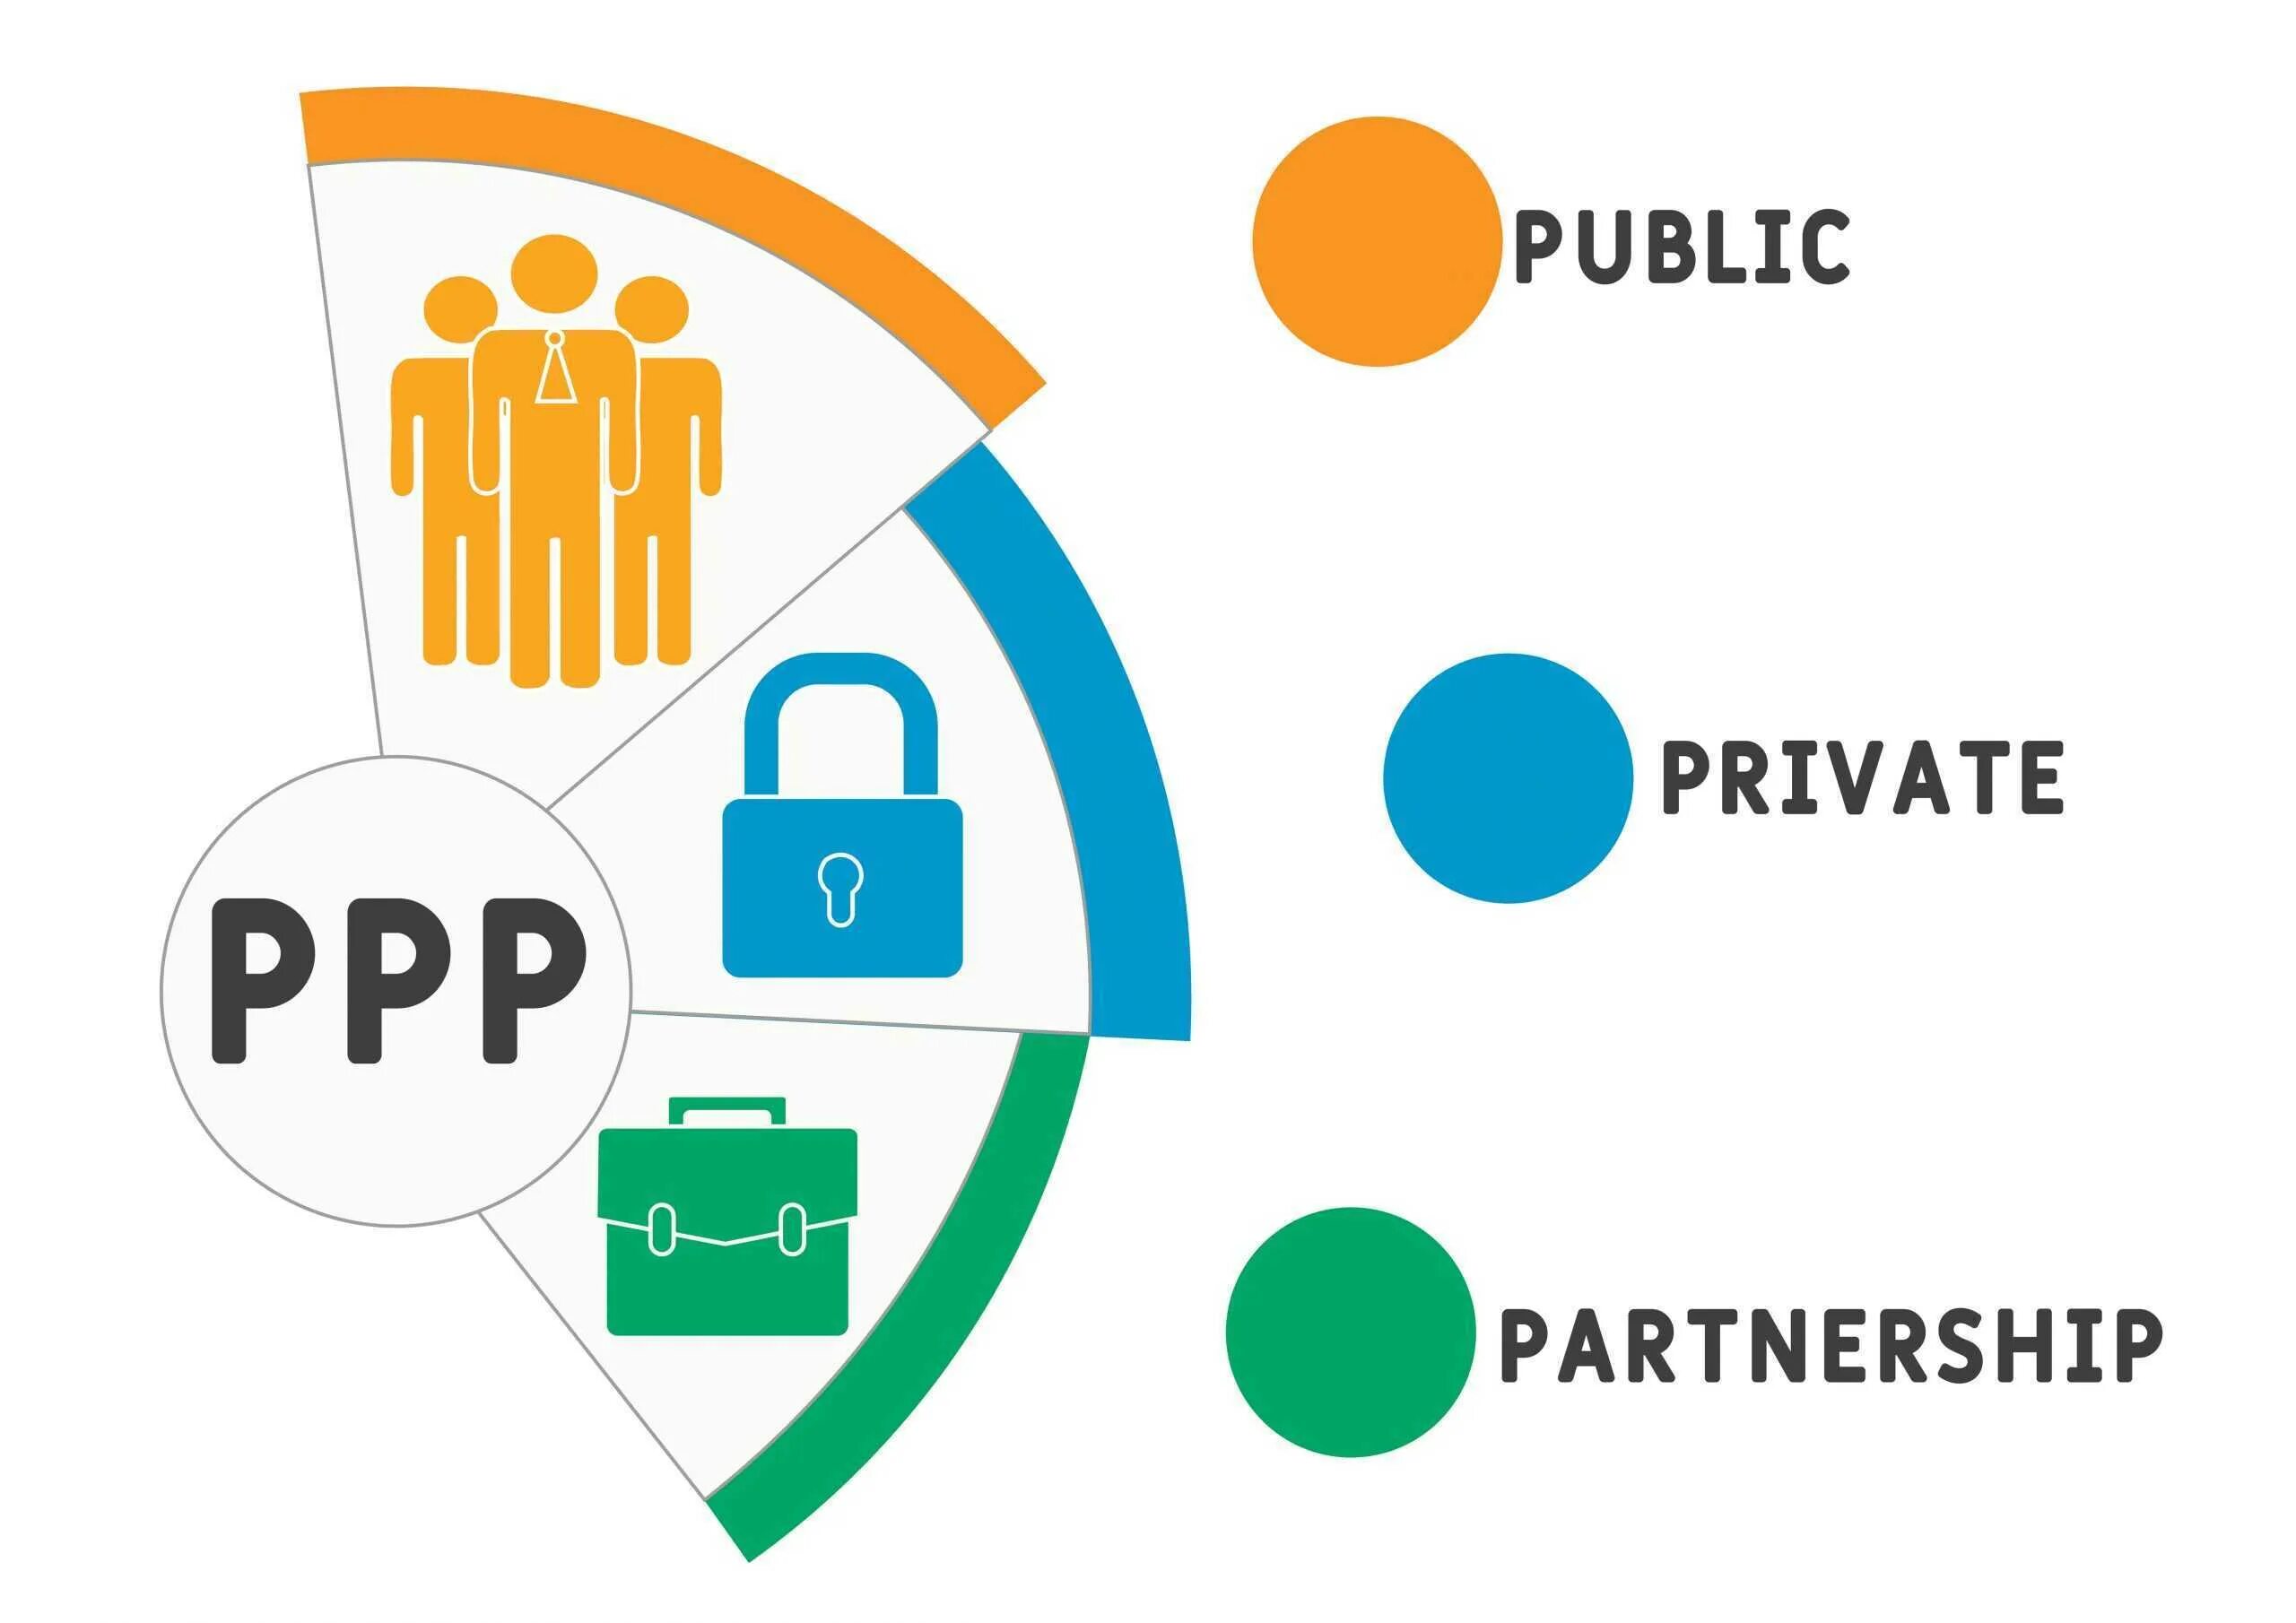 Public public partnership